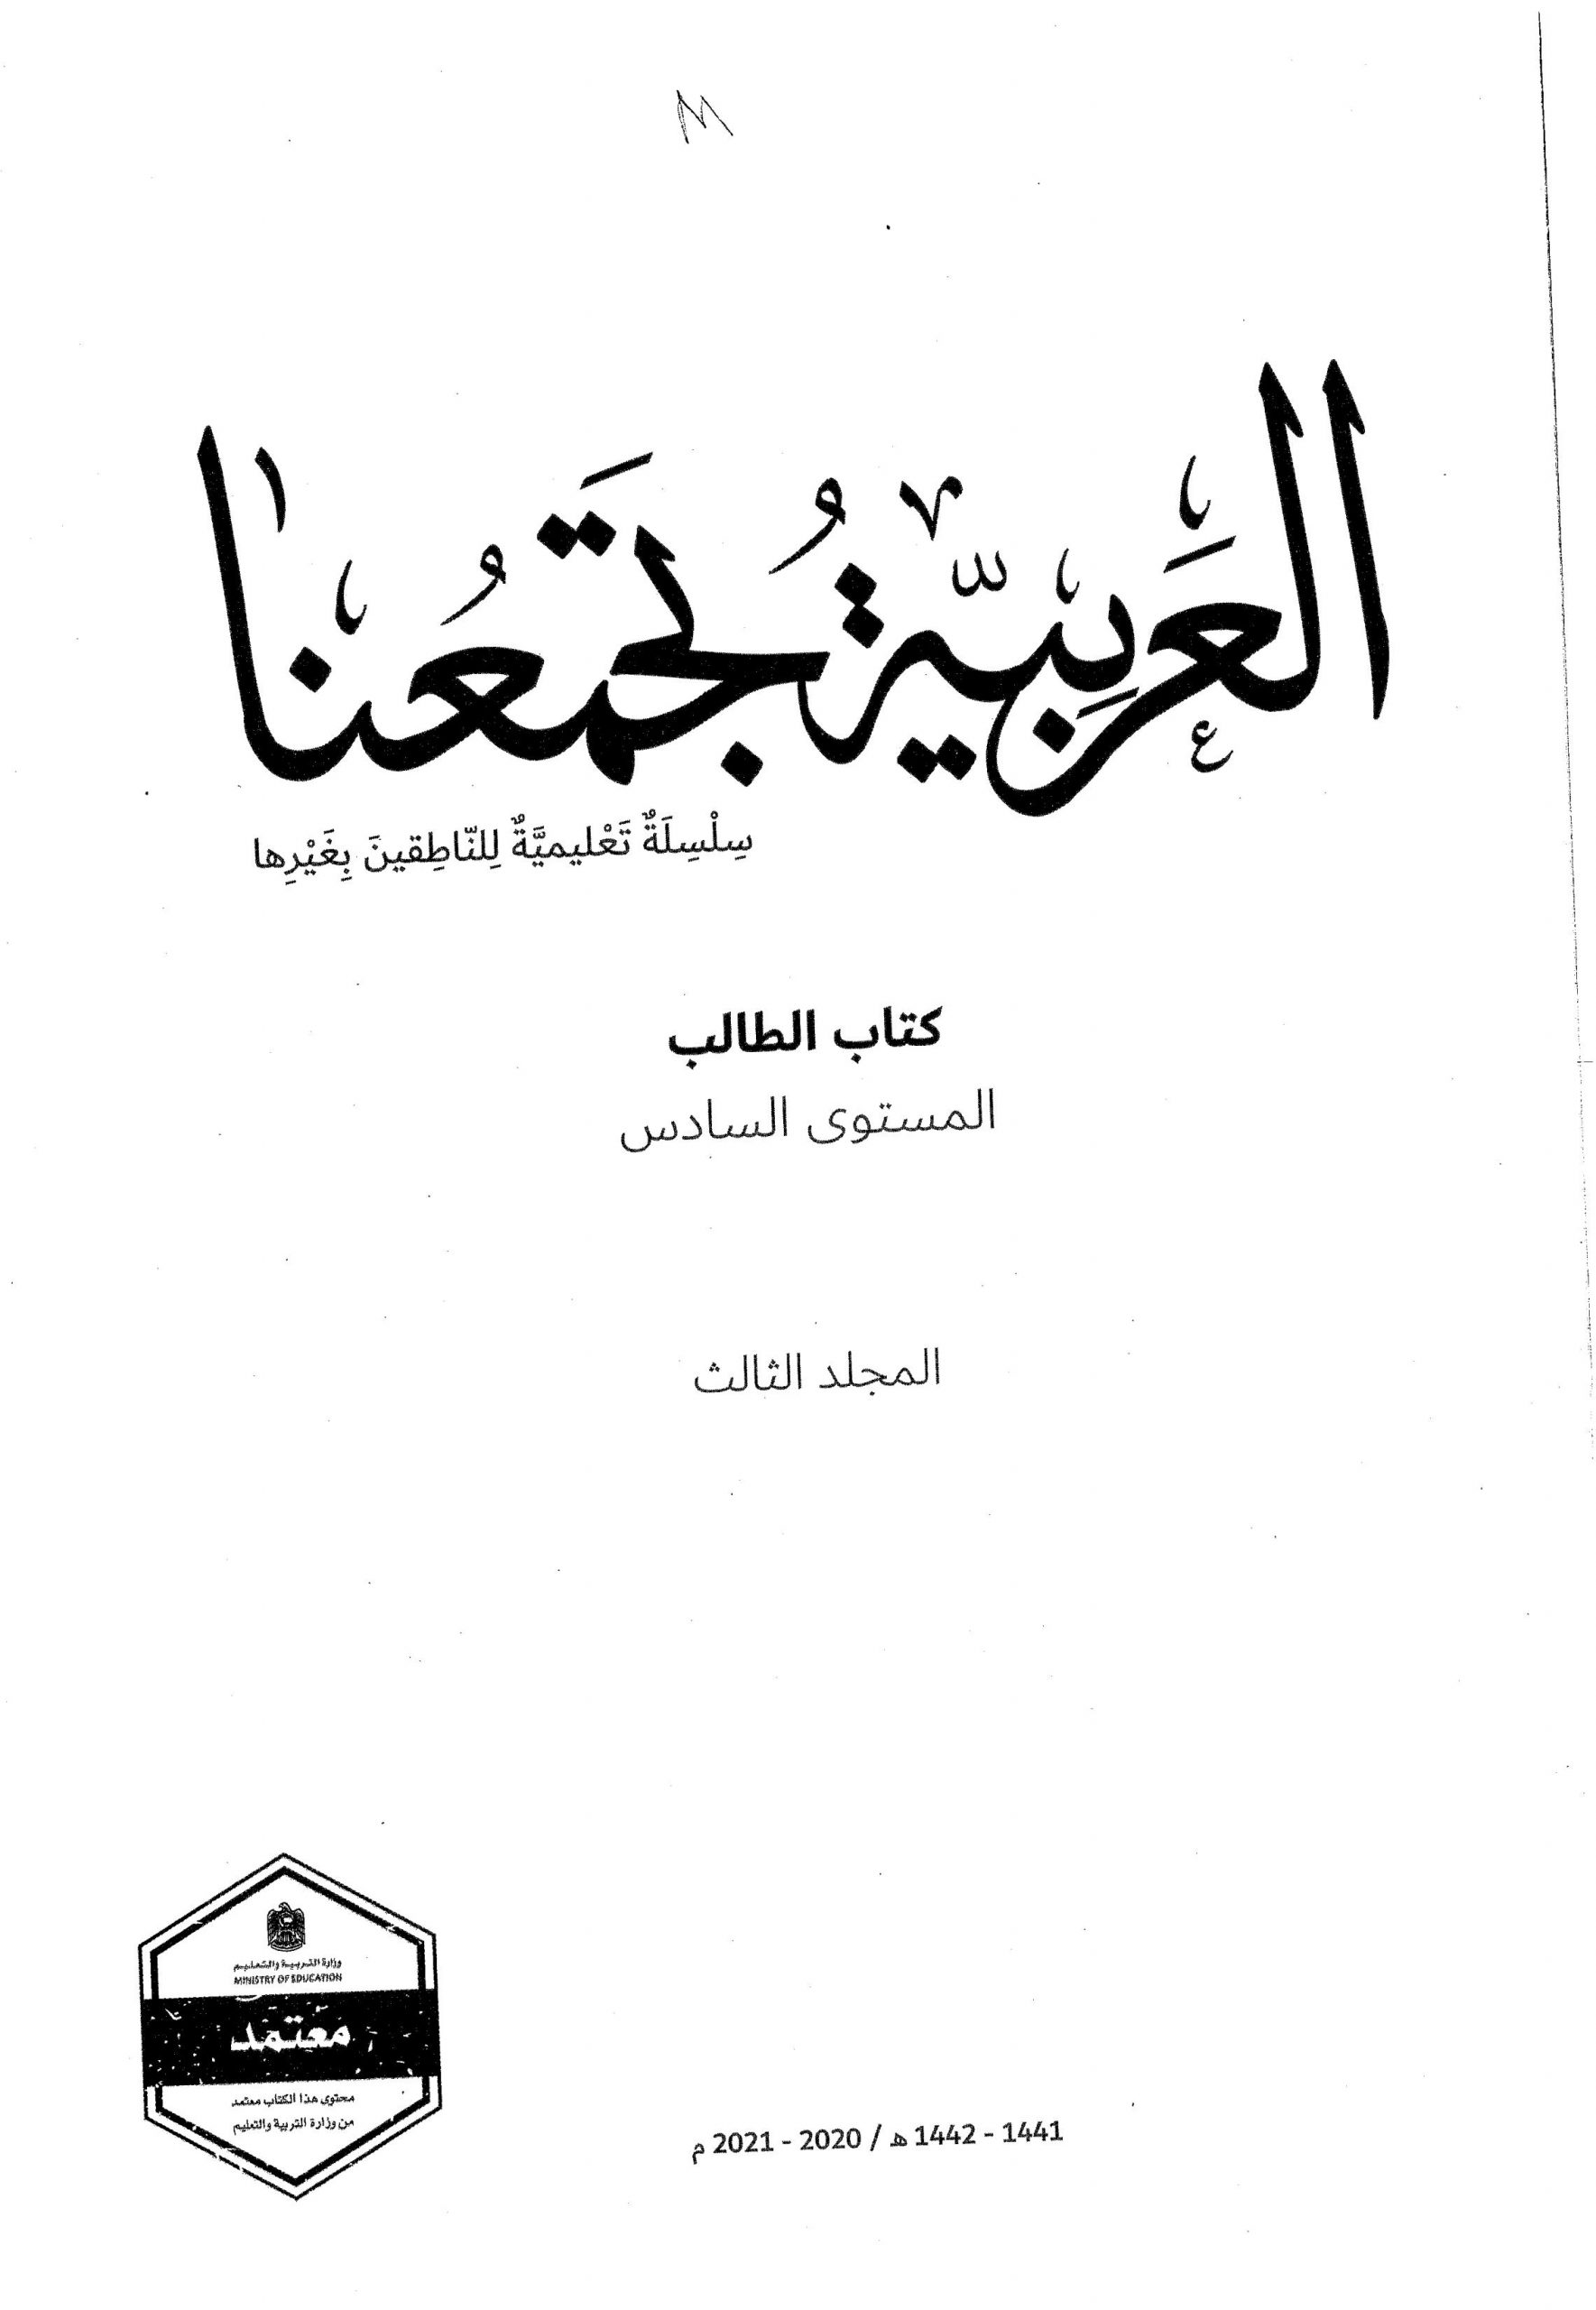 كتاب الطالب لغير الناطقين بها الفصل الدراسي الثالث 2020-2021 الصف السادس مادة اللغة العربية